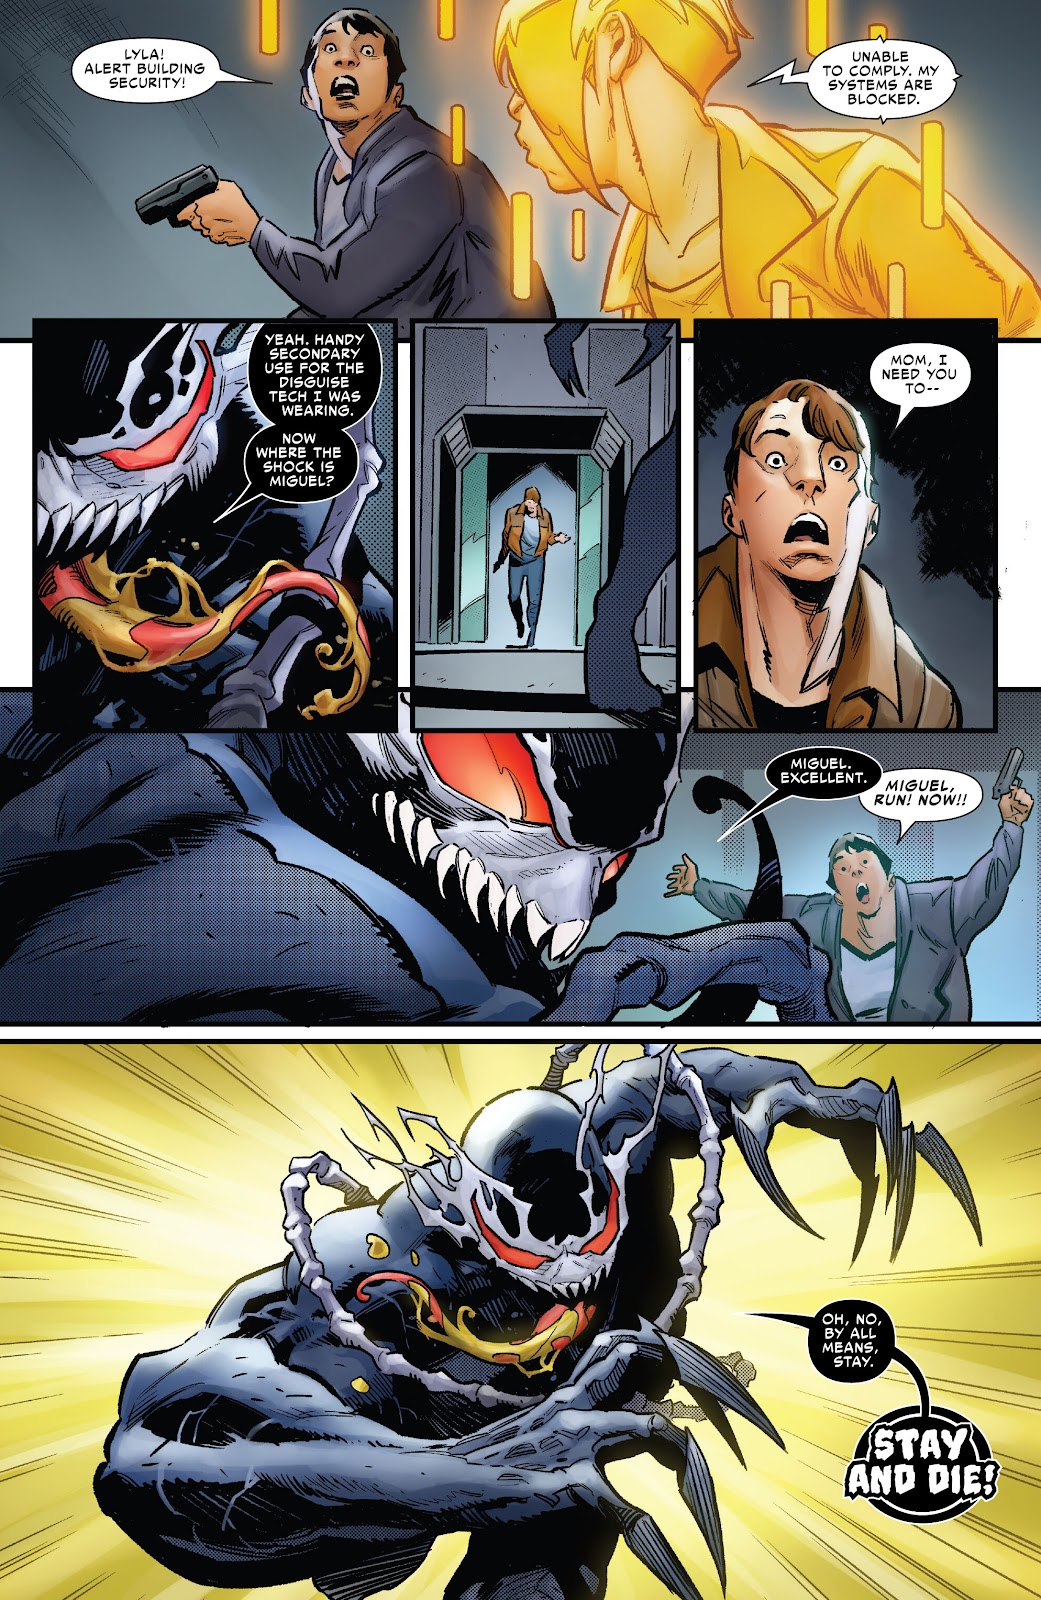 Symbiote Spider-Man 2099 issue 2 - Page 17